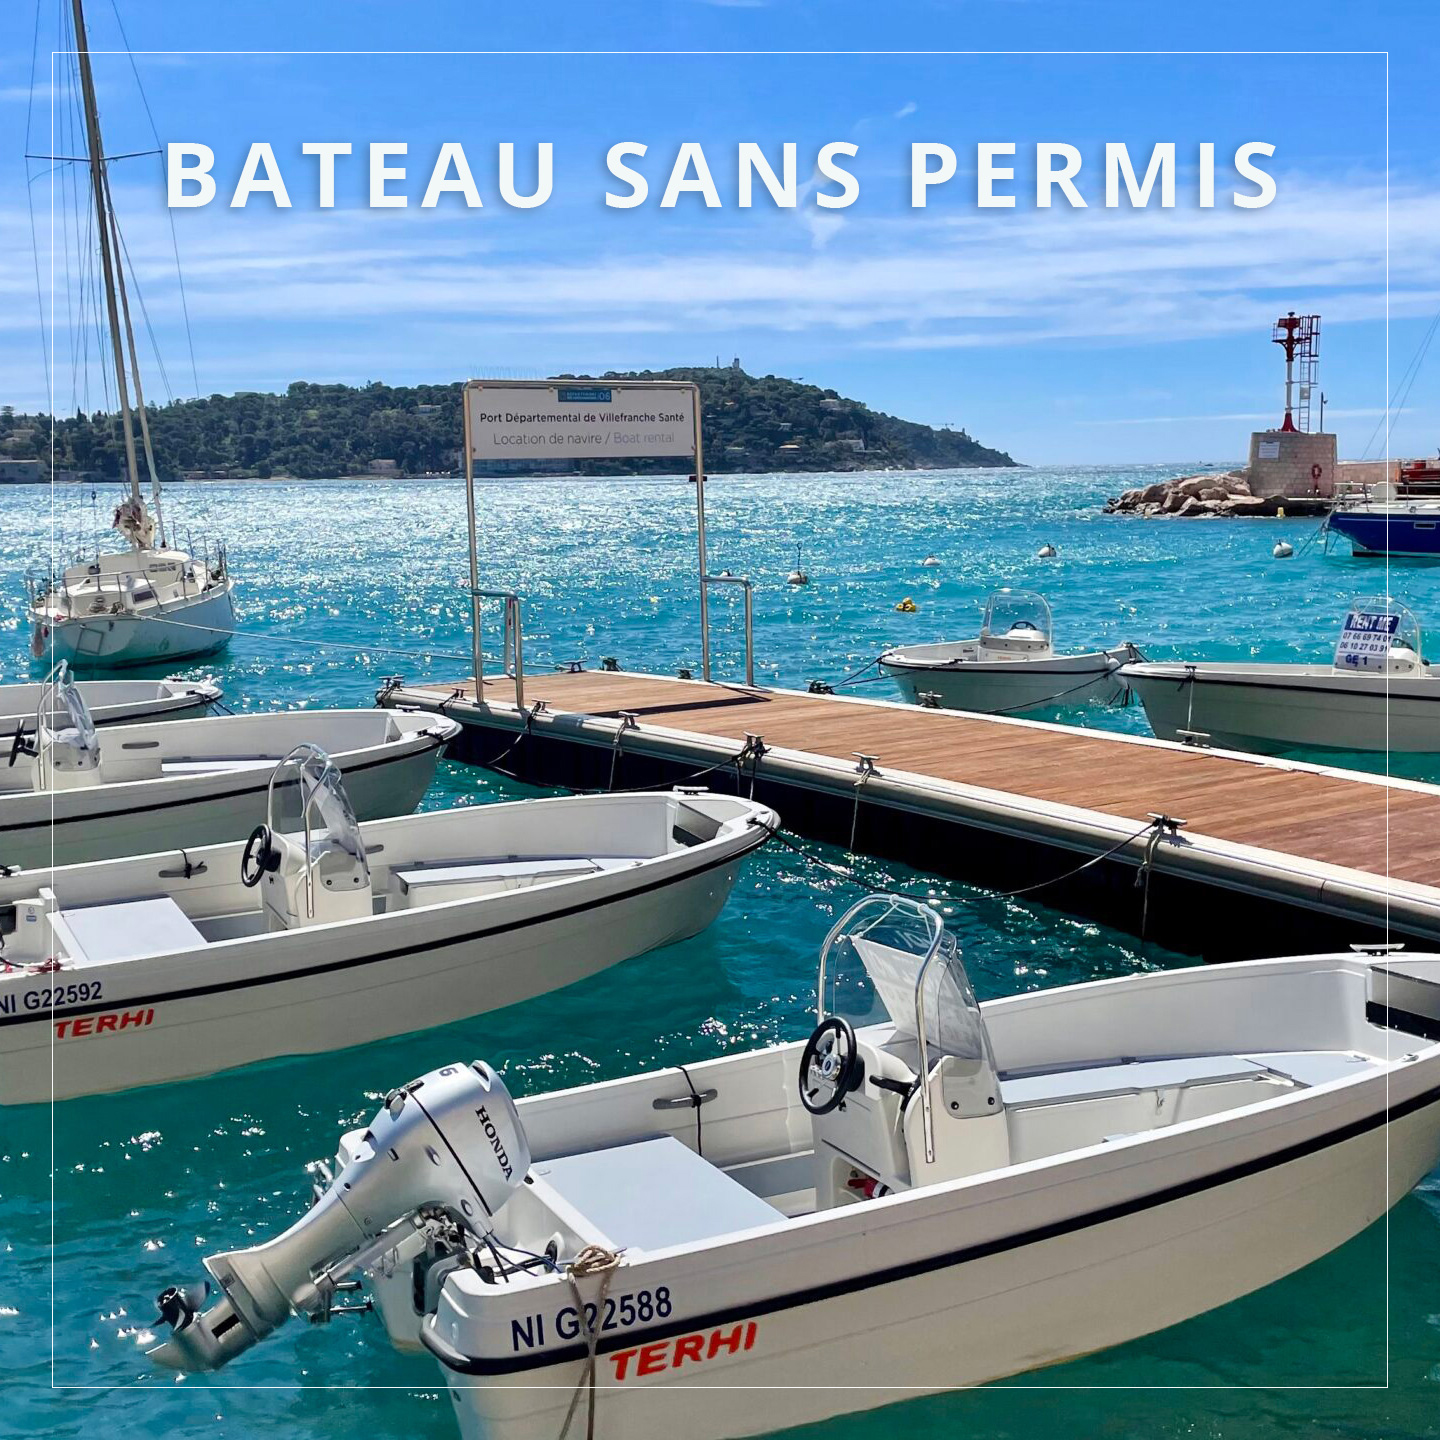 Location bateaux Location bateaux sans permis Villefranche-Sur-Mer